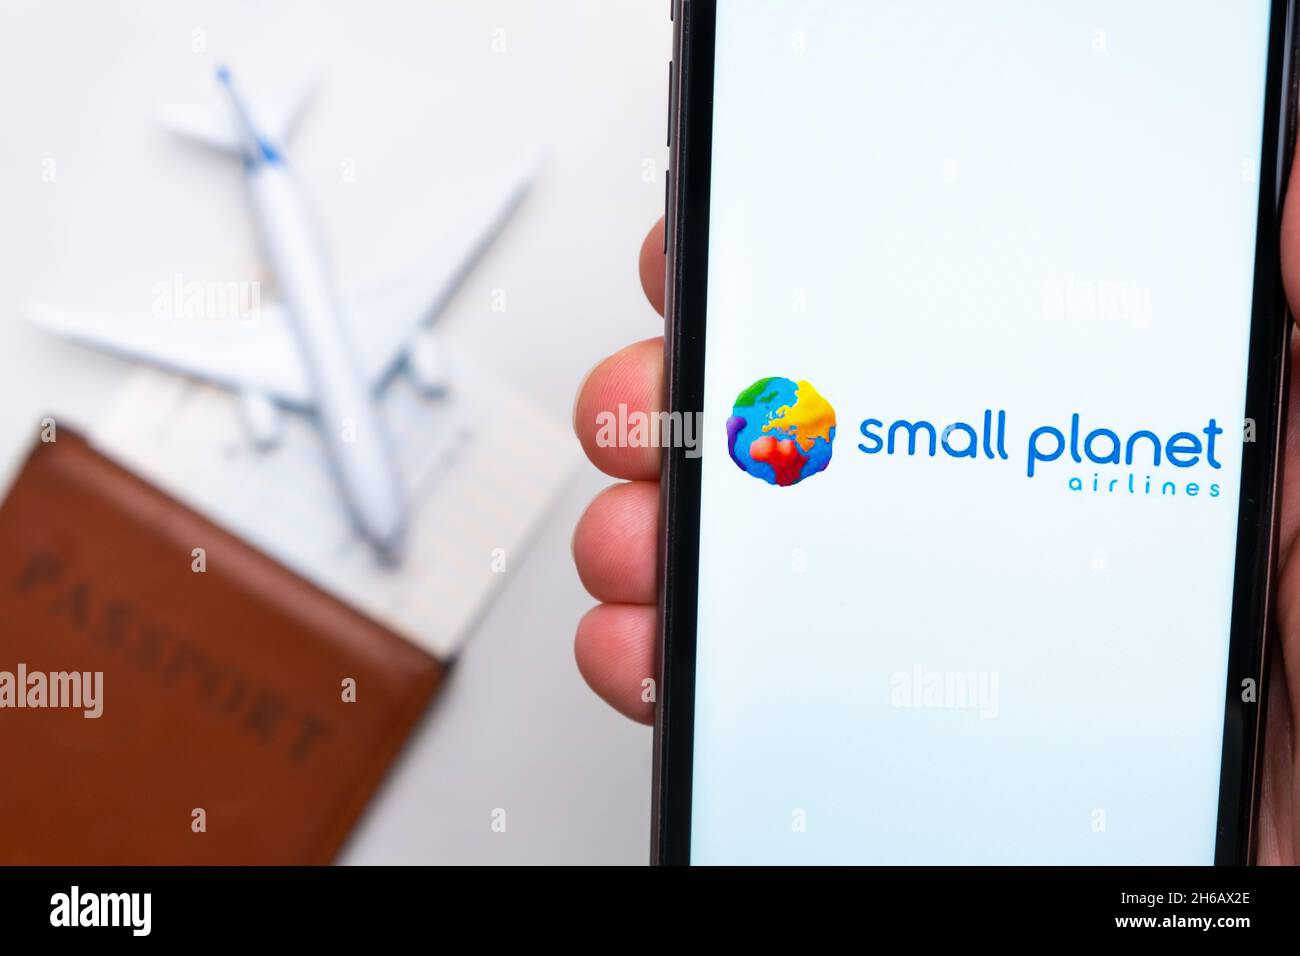 Applicazione Small Planet Airline sullo schermo dello smartphone mans Hand. Un aeroplano giocattolo bianco e un passaporto si trovano su un tavolo con una superficie leggera.Novembre 2021, San Francisco, USA Foto Stock